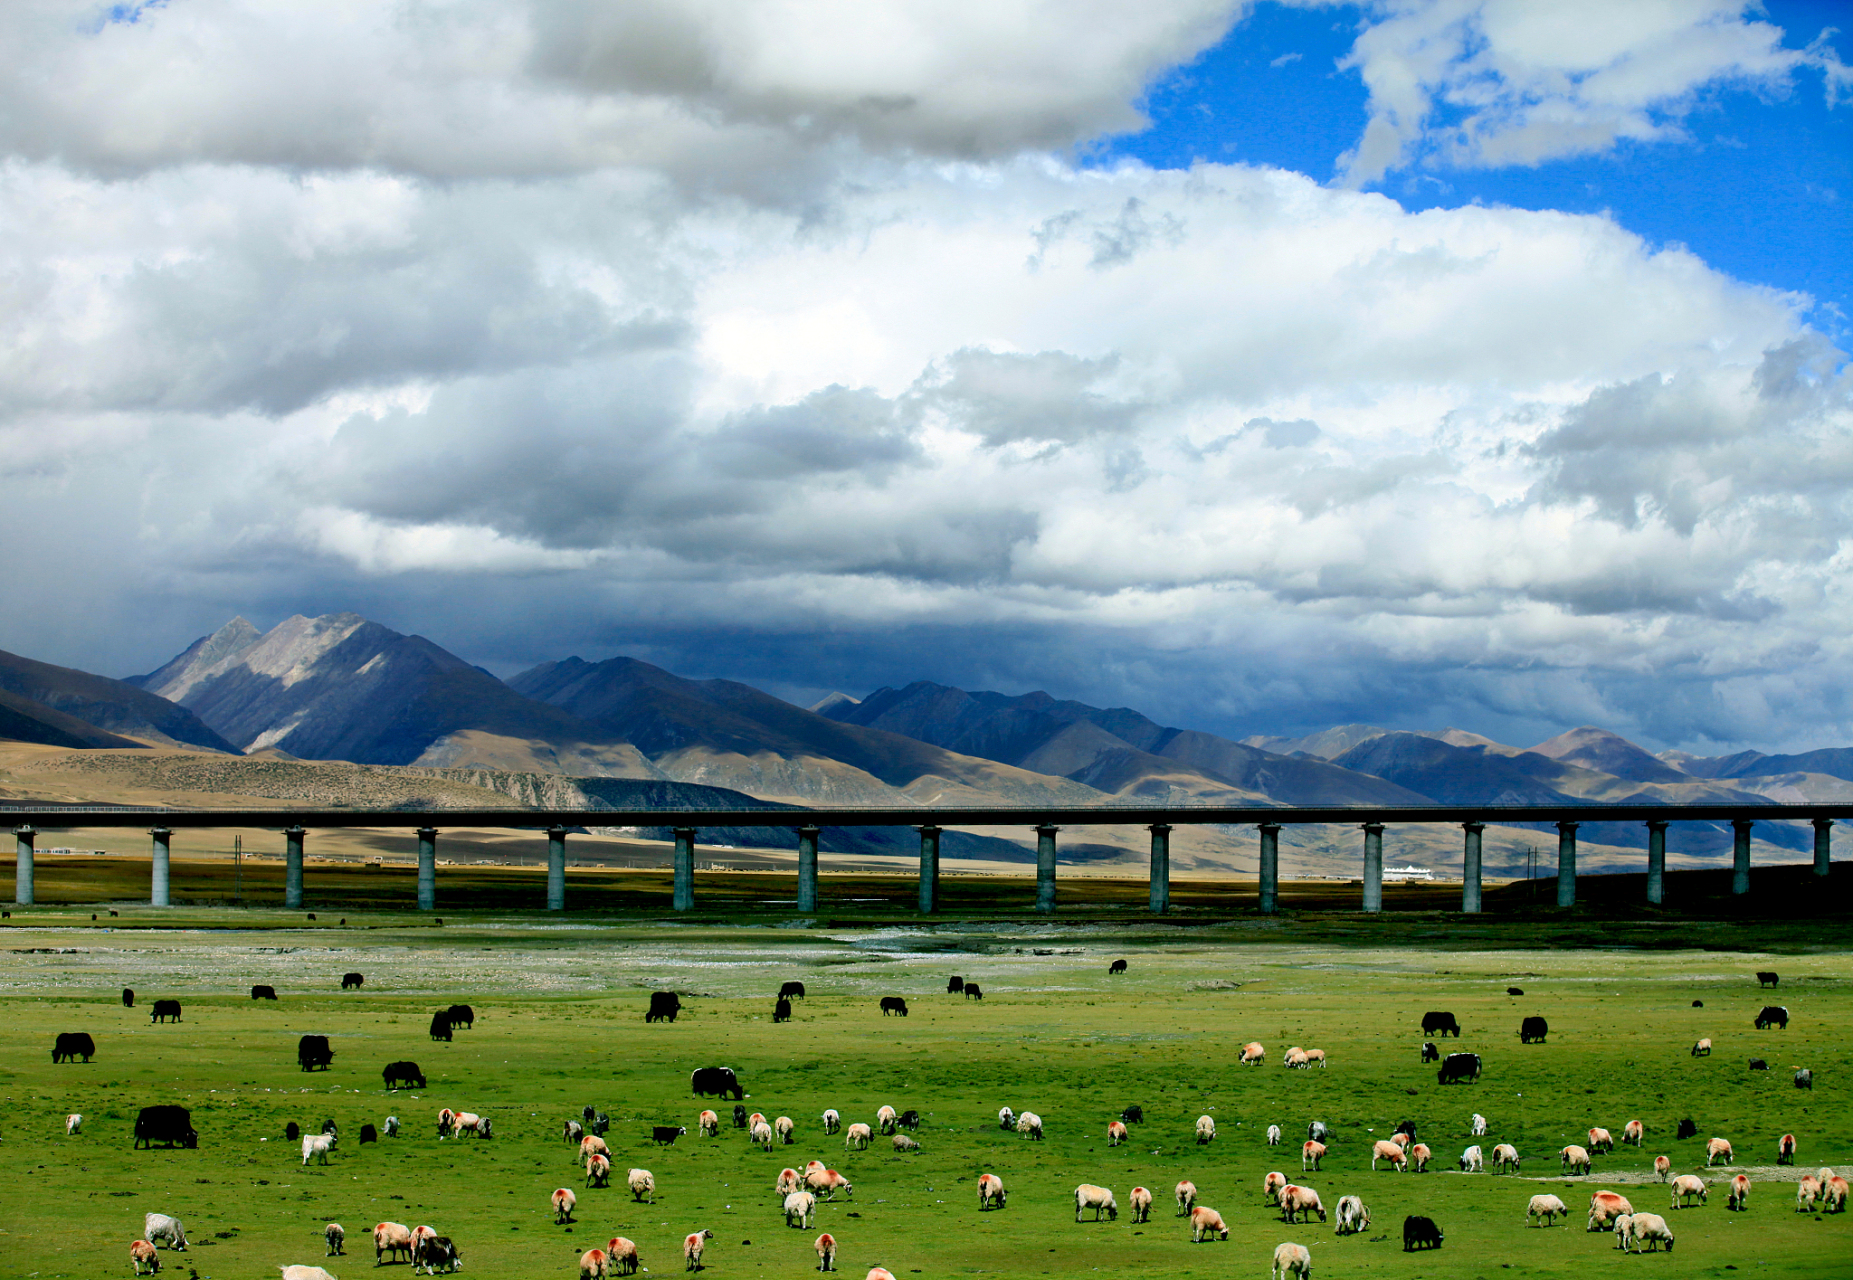 青藏铁路:连接青海和西藏的高原铁路,被誉为世界上最高的铁路线路